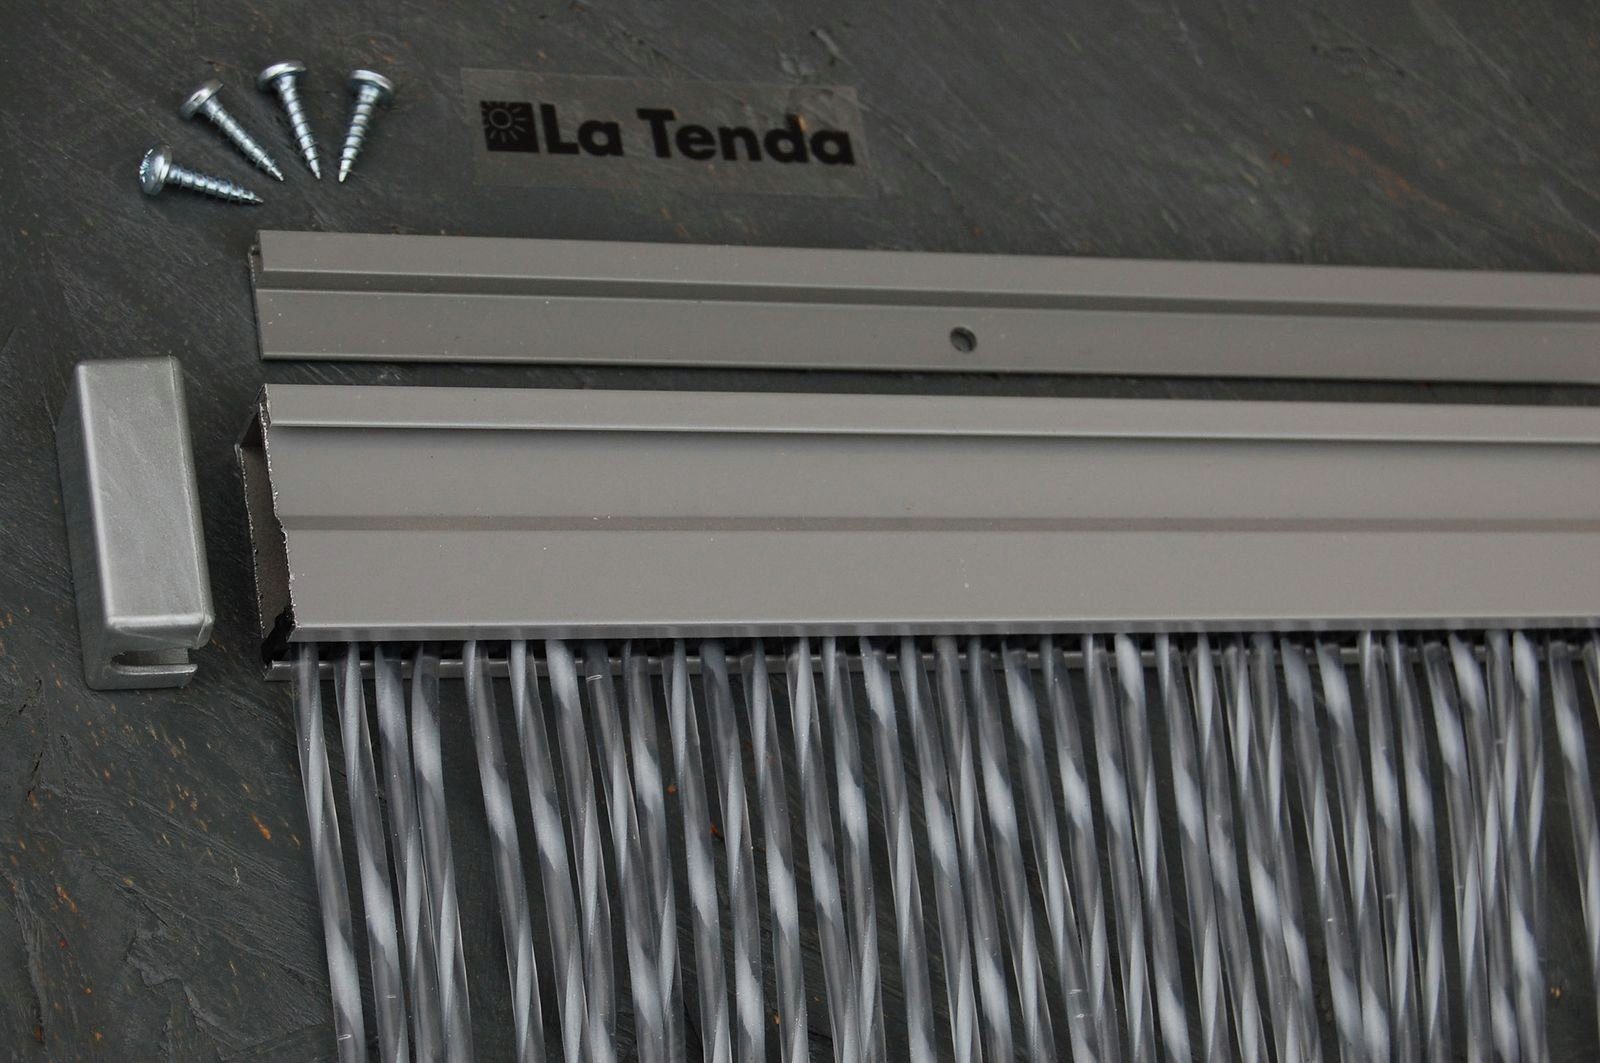 Insektenschutz-Vorhang La Breite grau, Tenda x 2 und cm, 230 Tenda - 120 PVC kürzbar XL Länge La SIENA Streifenvorhang individuell